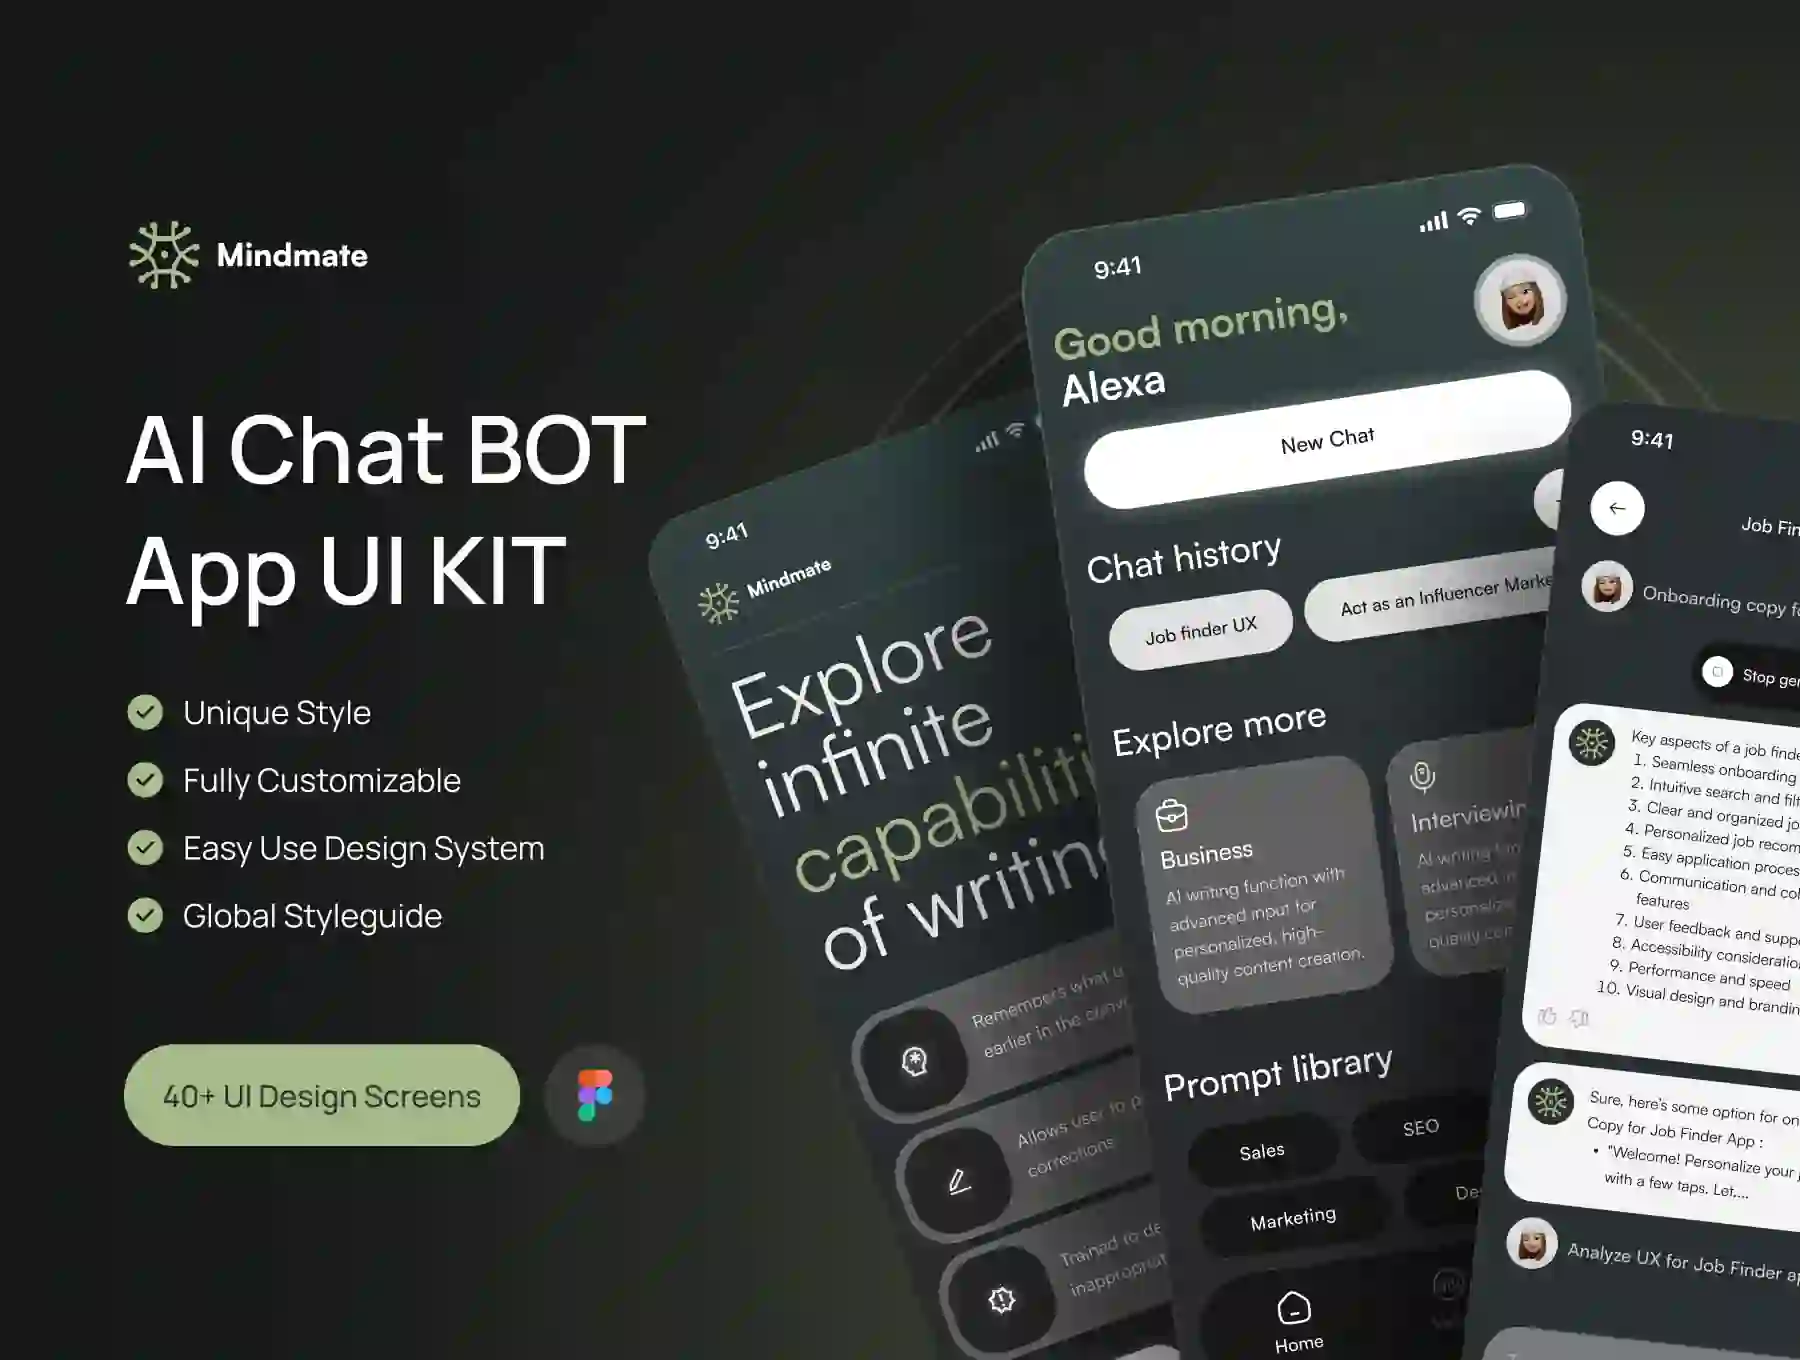 Mindmate - AI Chat BOT App UI KIT